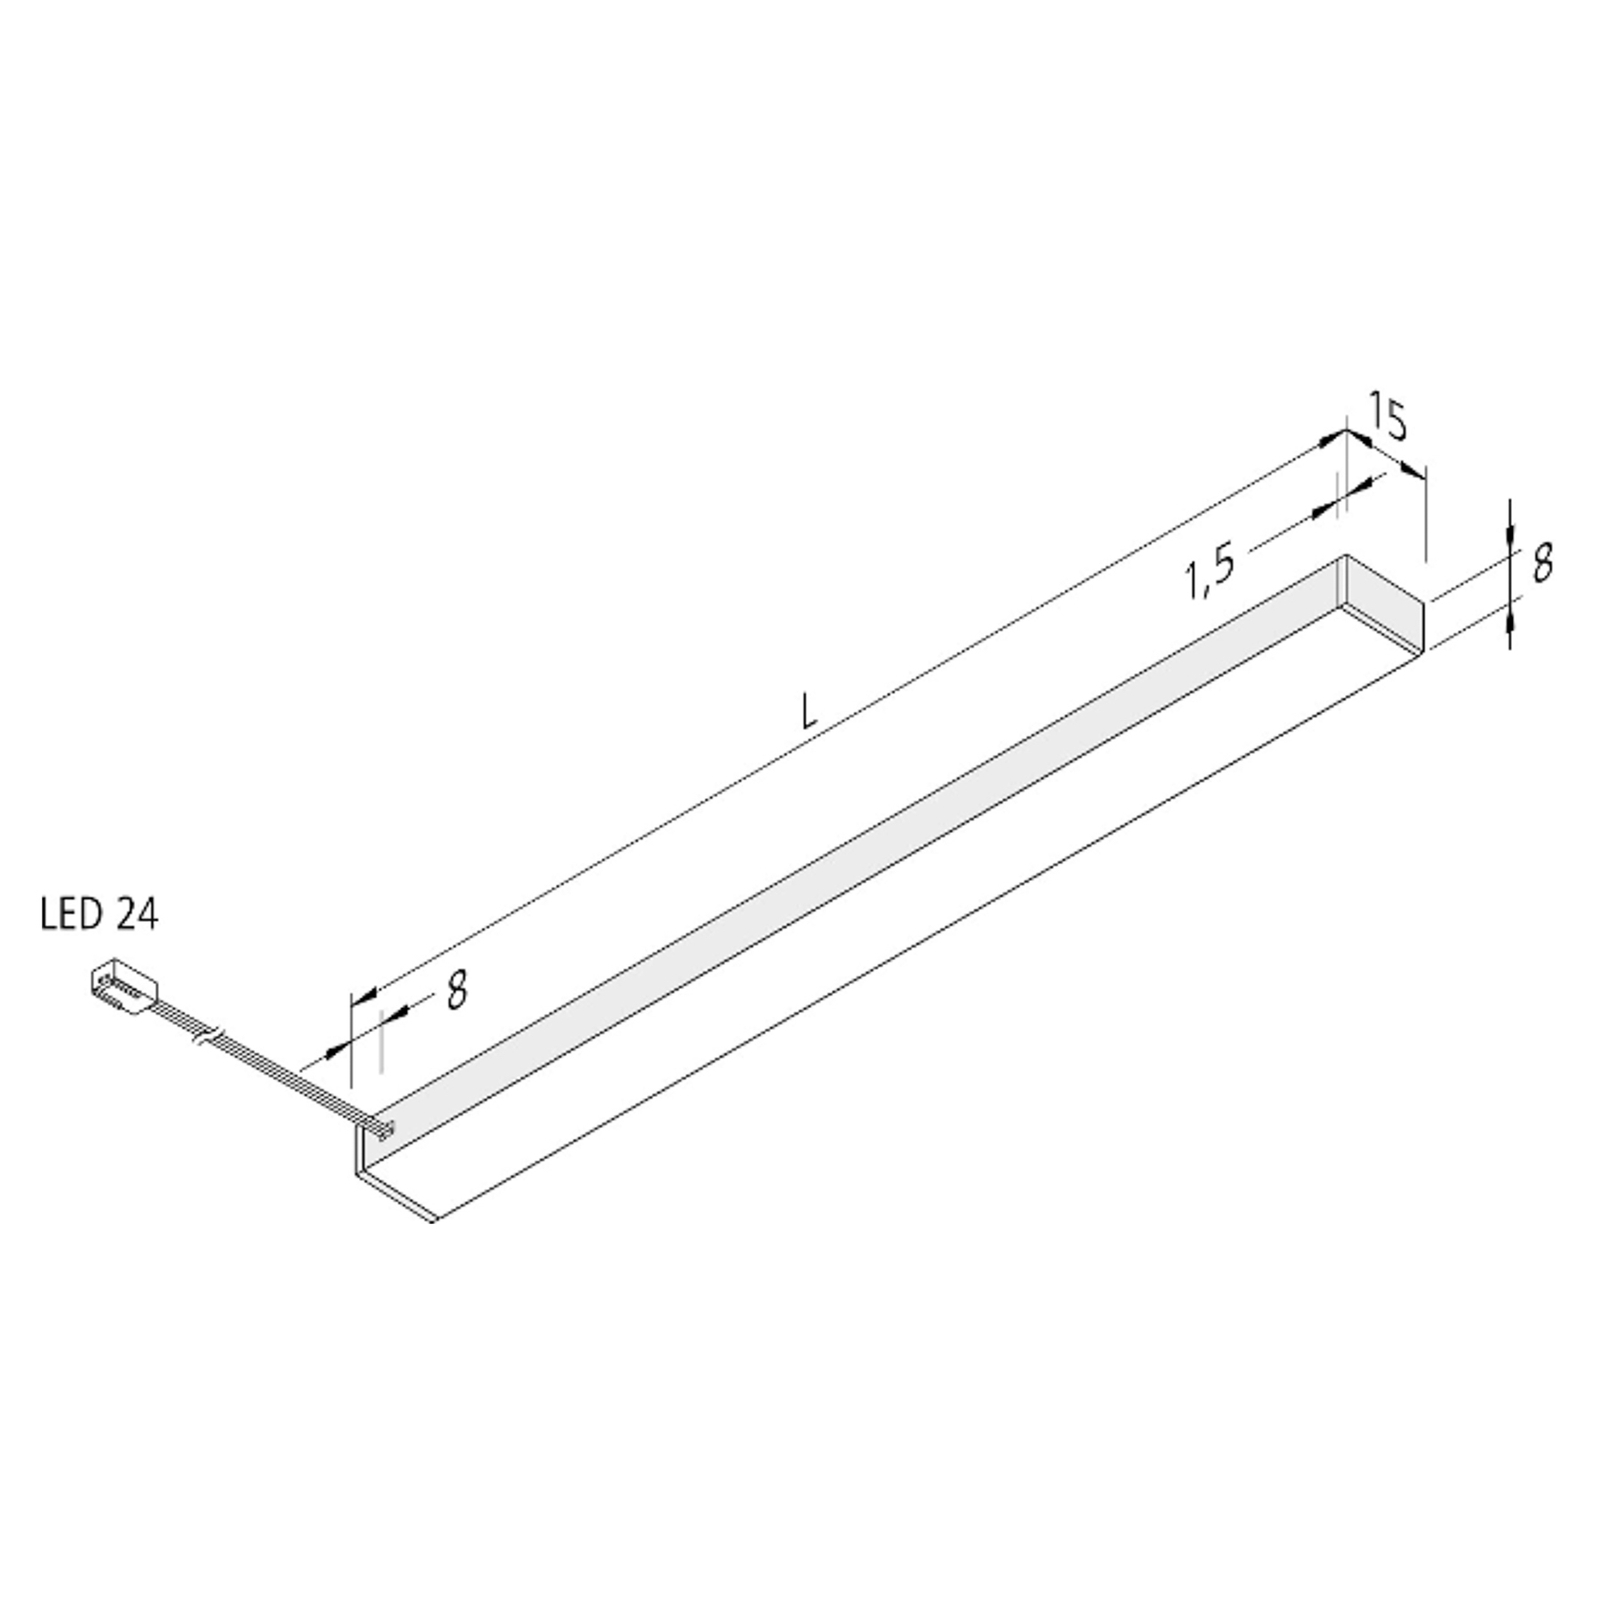 LED under-cabinet light Top-Stick FMK, 3,000K, 90cm